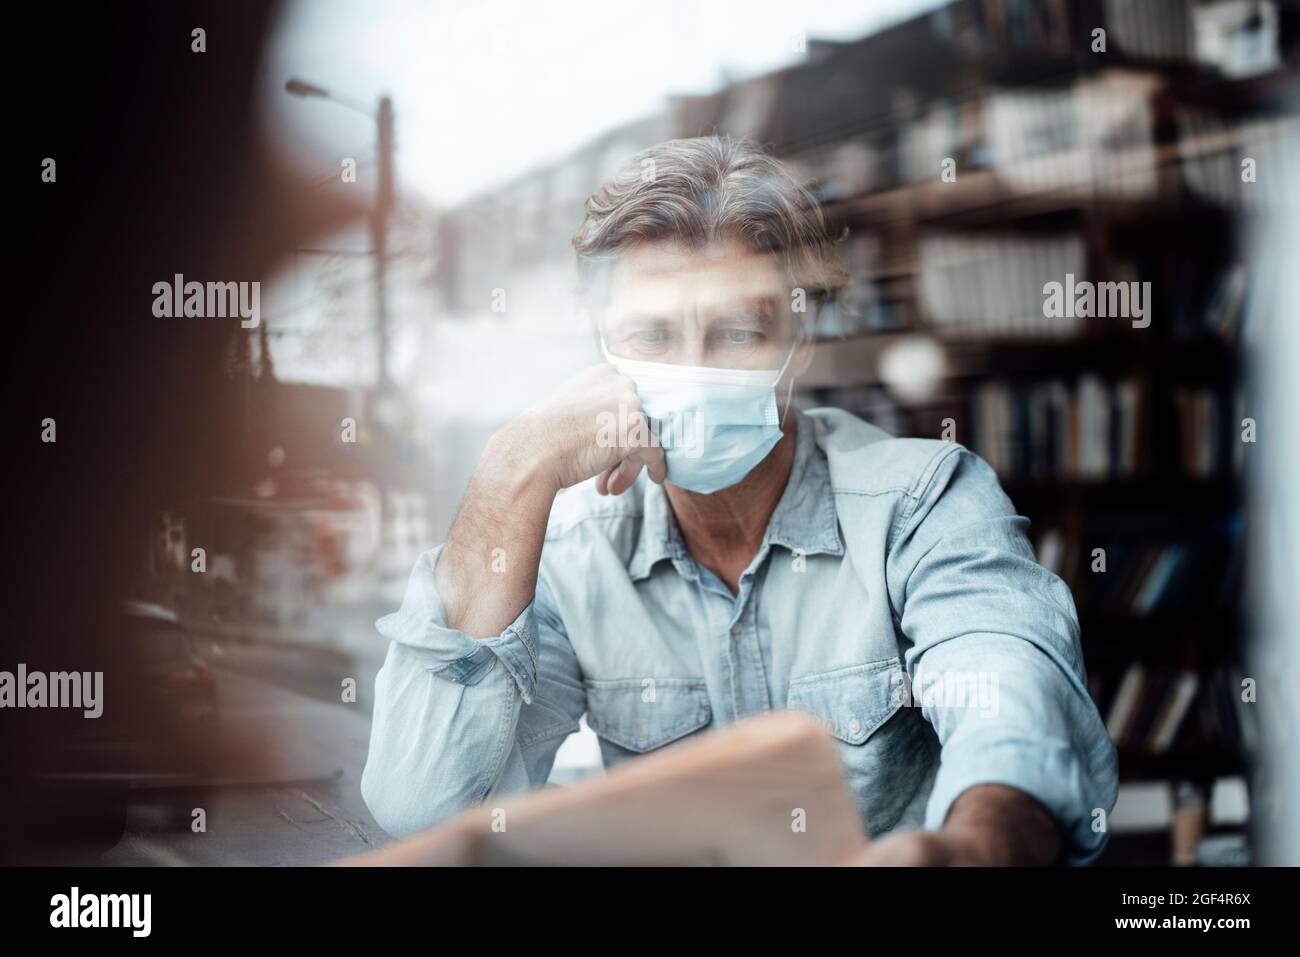 Reifer Mann, der eine schützende Gesichtsmaske trägt, liest Zeitung im Café, das durch das Glasfenster gesehen wird Stockfoto